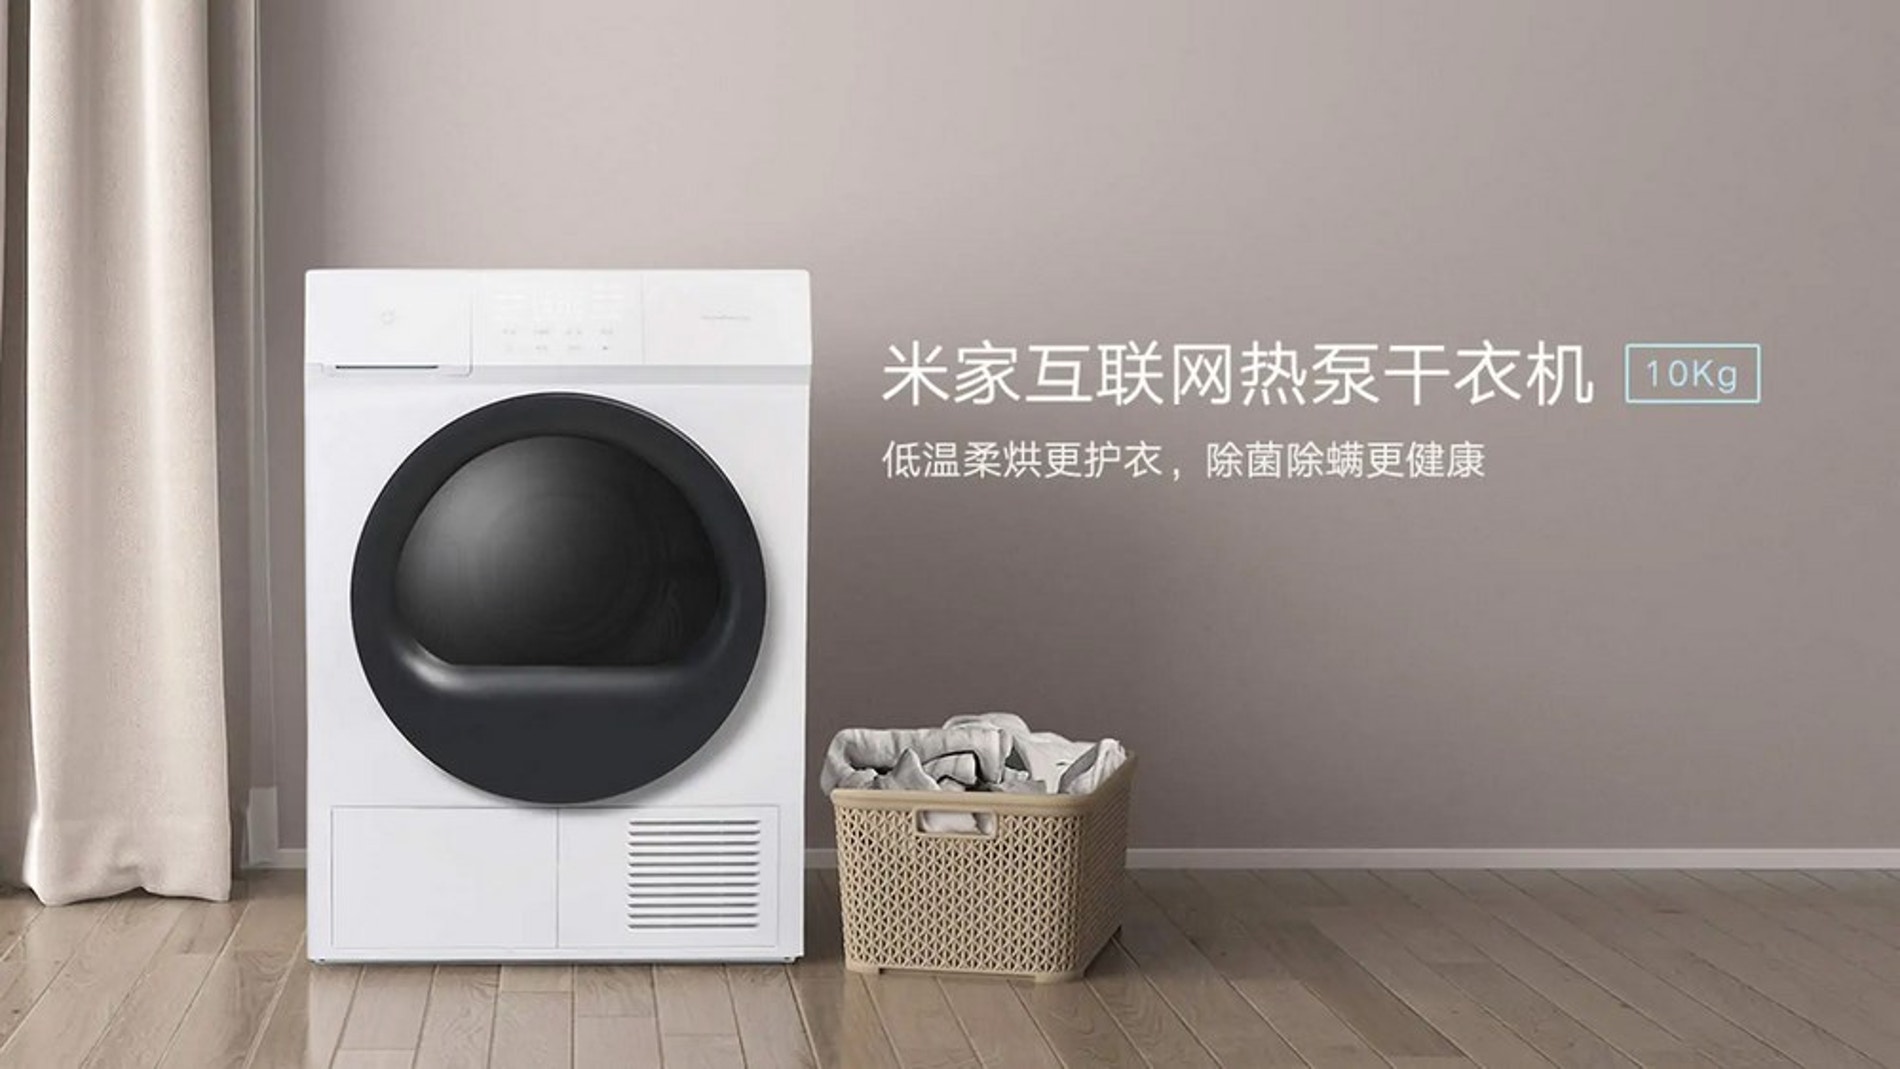 Evaporar comunicación privado Así es la nueva secadora anti bacterias de Xiaomi que controlas con tu móvil